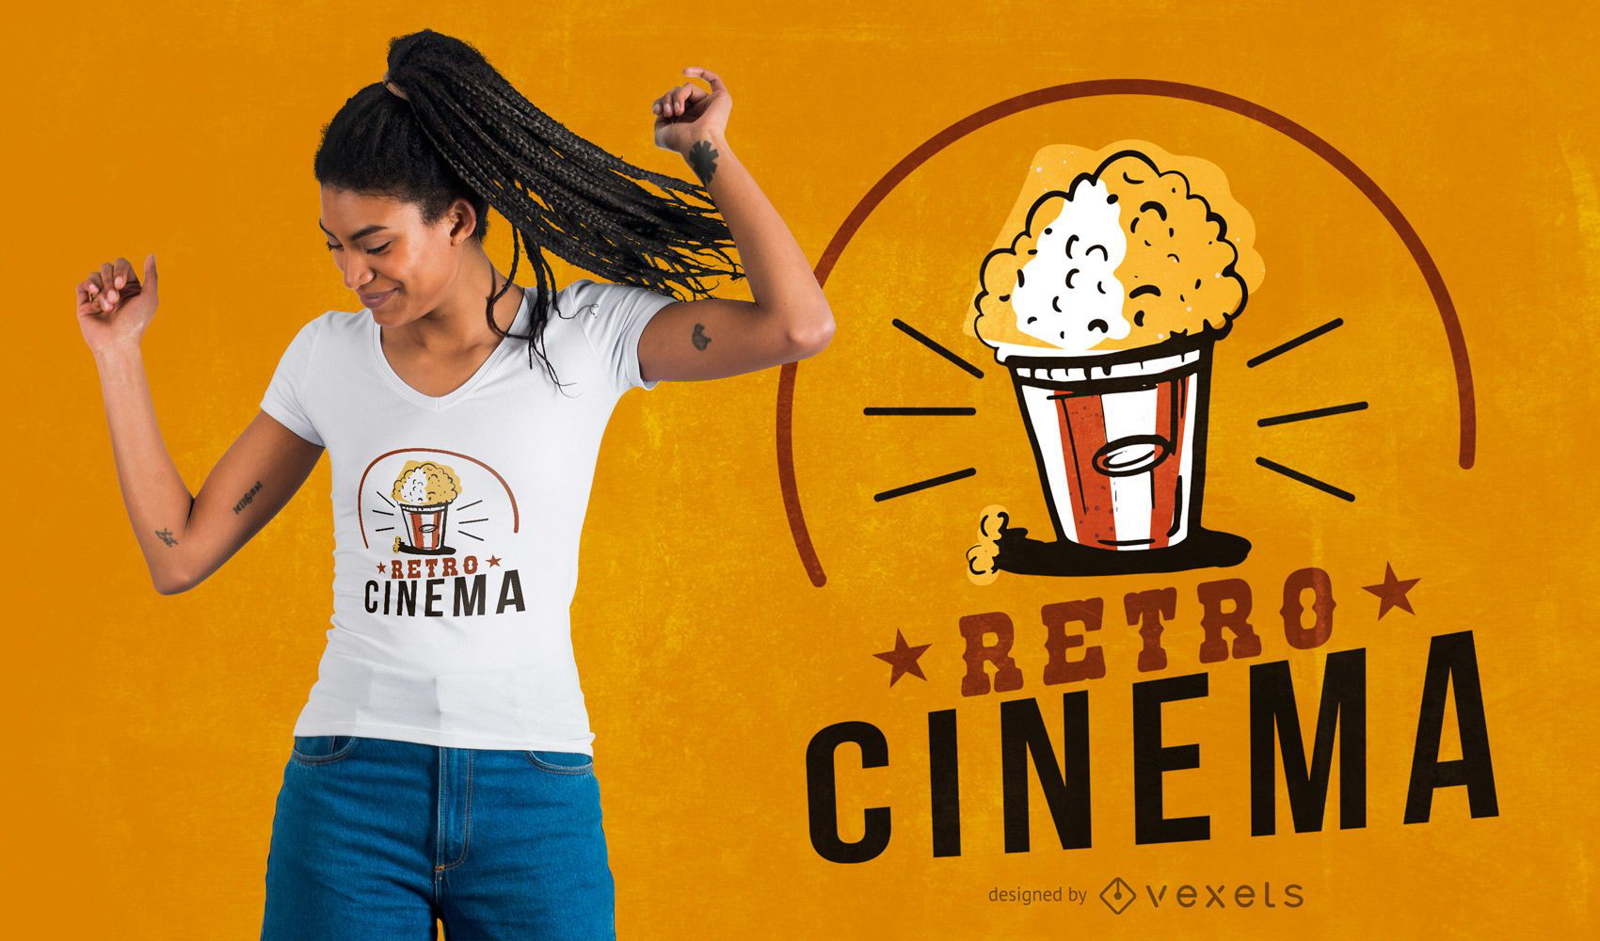 Retro cinema t-shirt design